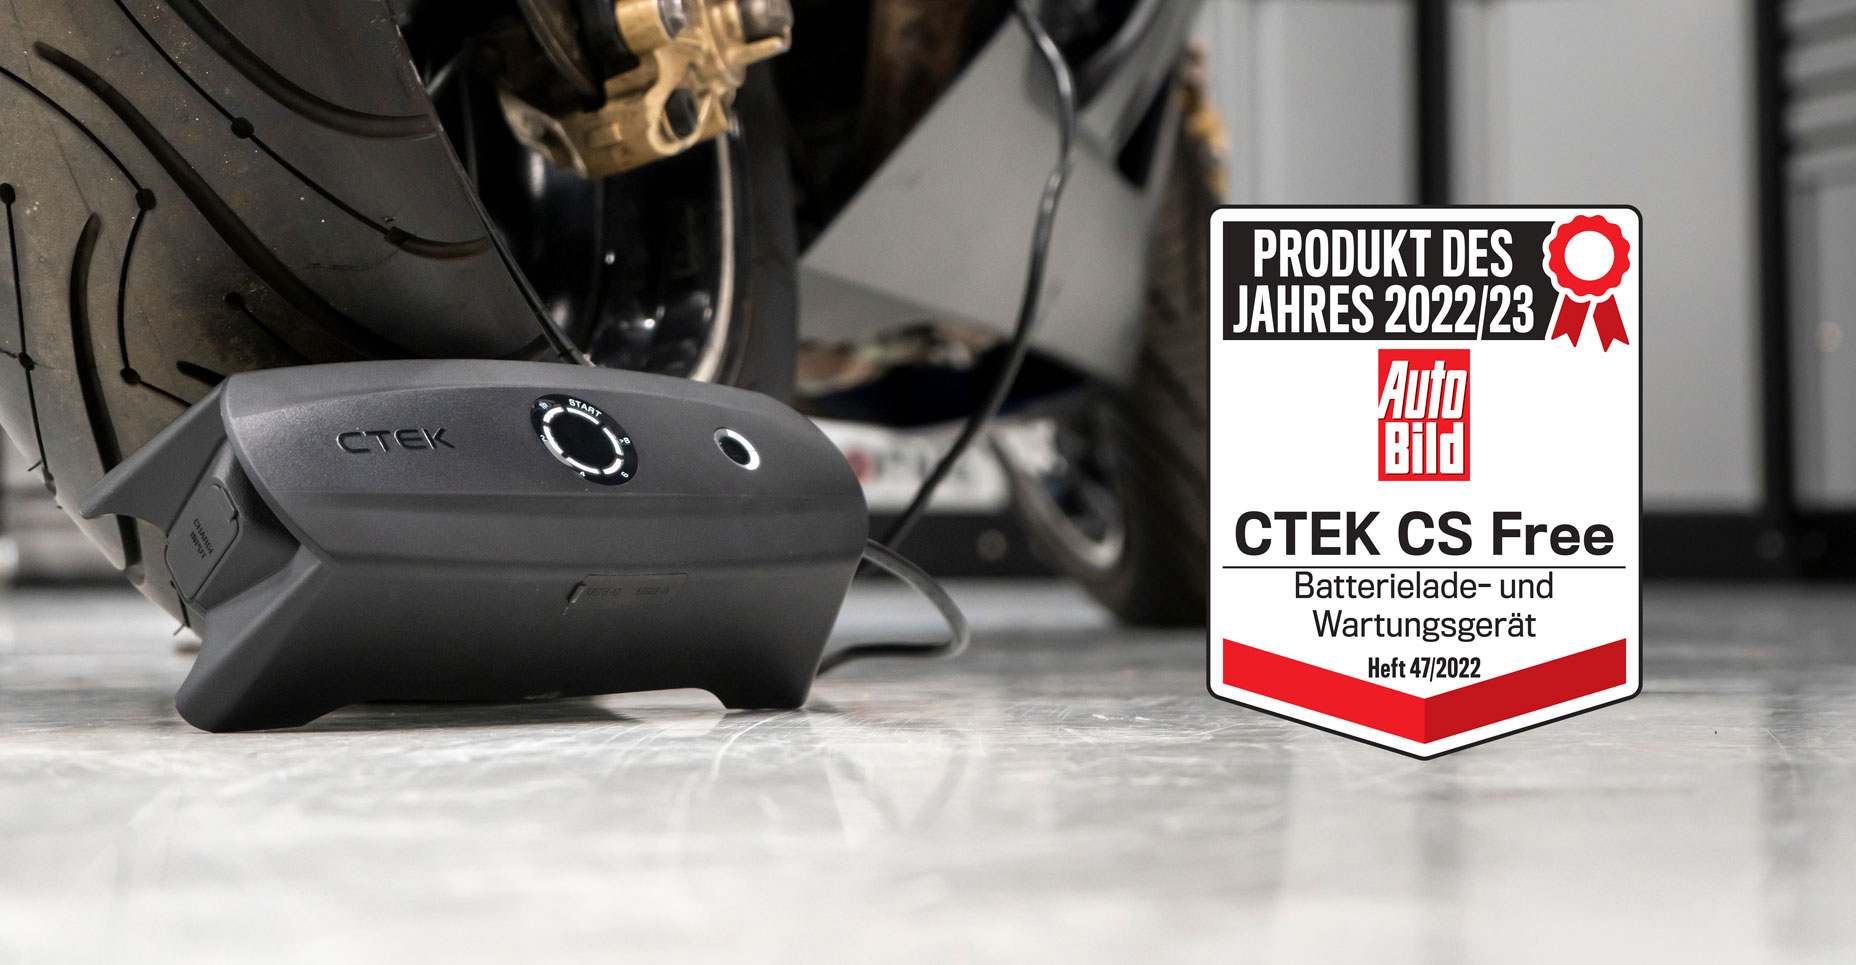 CTEK CS FREE Multifunksjonell 4-i-1 bærbar lader 12V med Adaptive Boost-teknologi, Artikkelnr. 40-462 - ctek.com